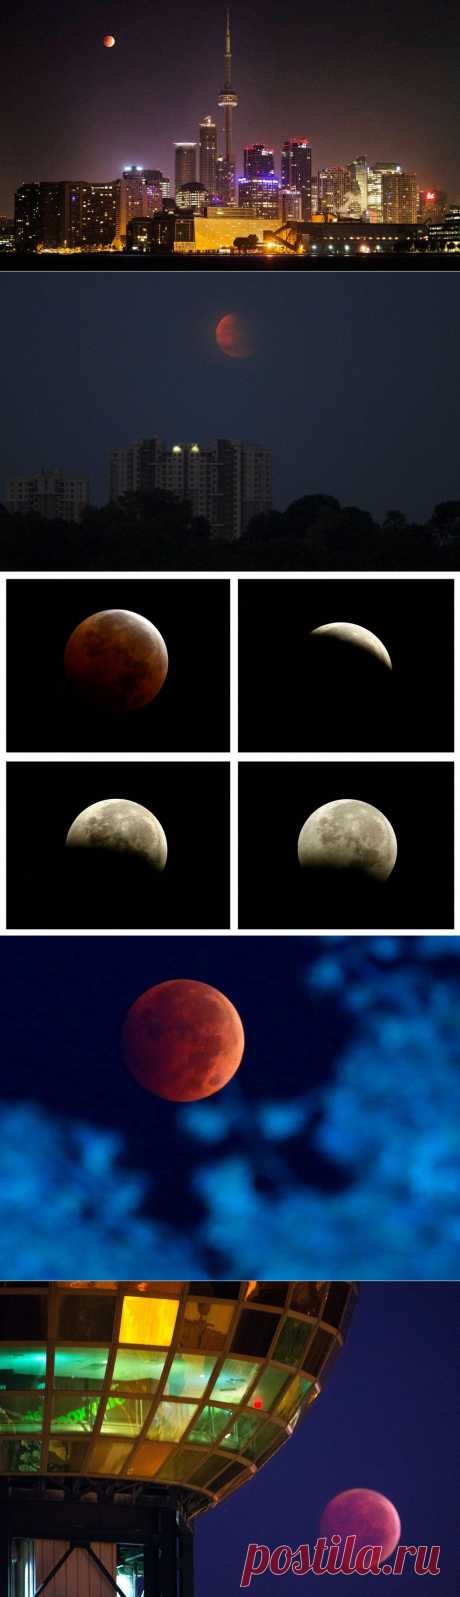 Кровавое лунное затмение - Наука и жизнь